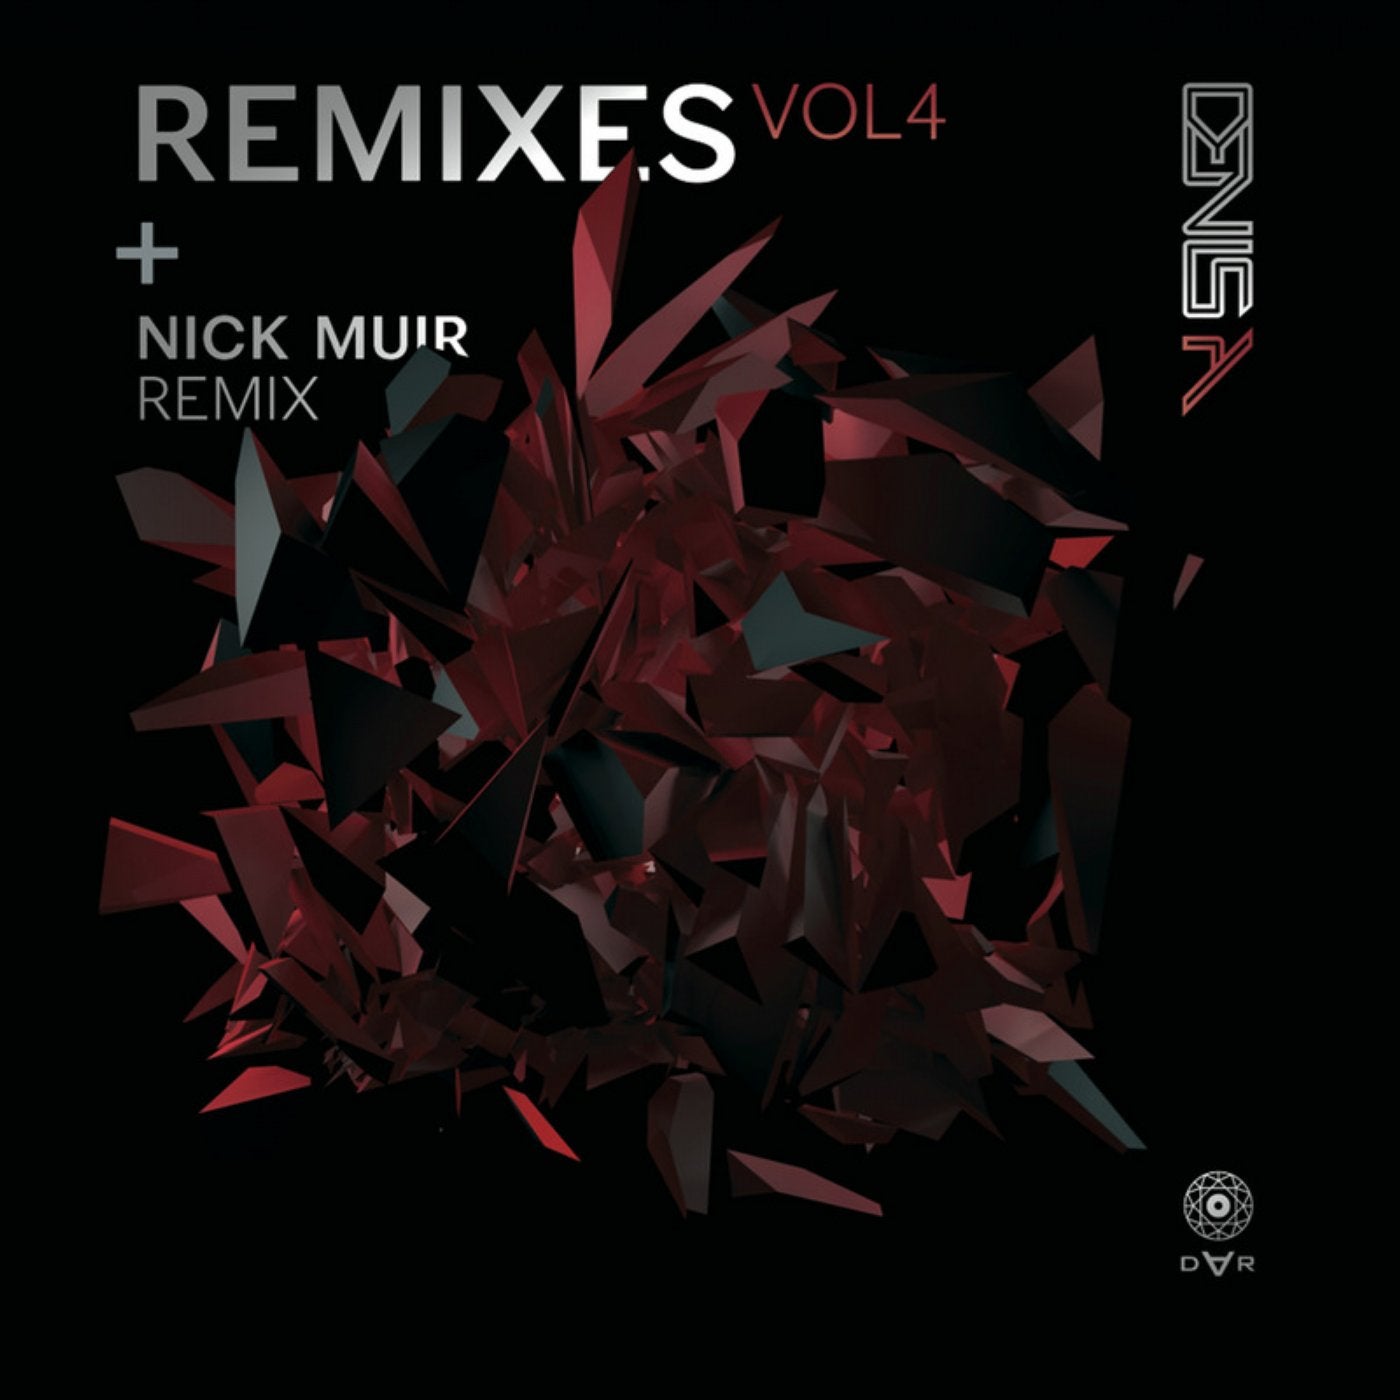 2010 - Remixes Volume 3. Nik remix